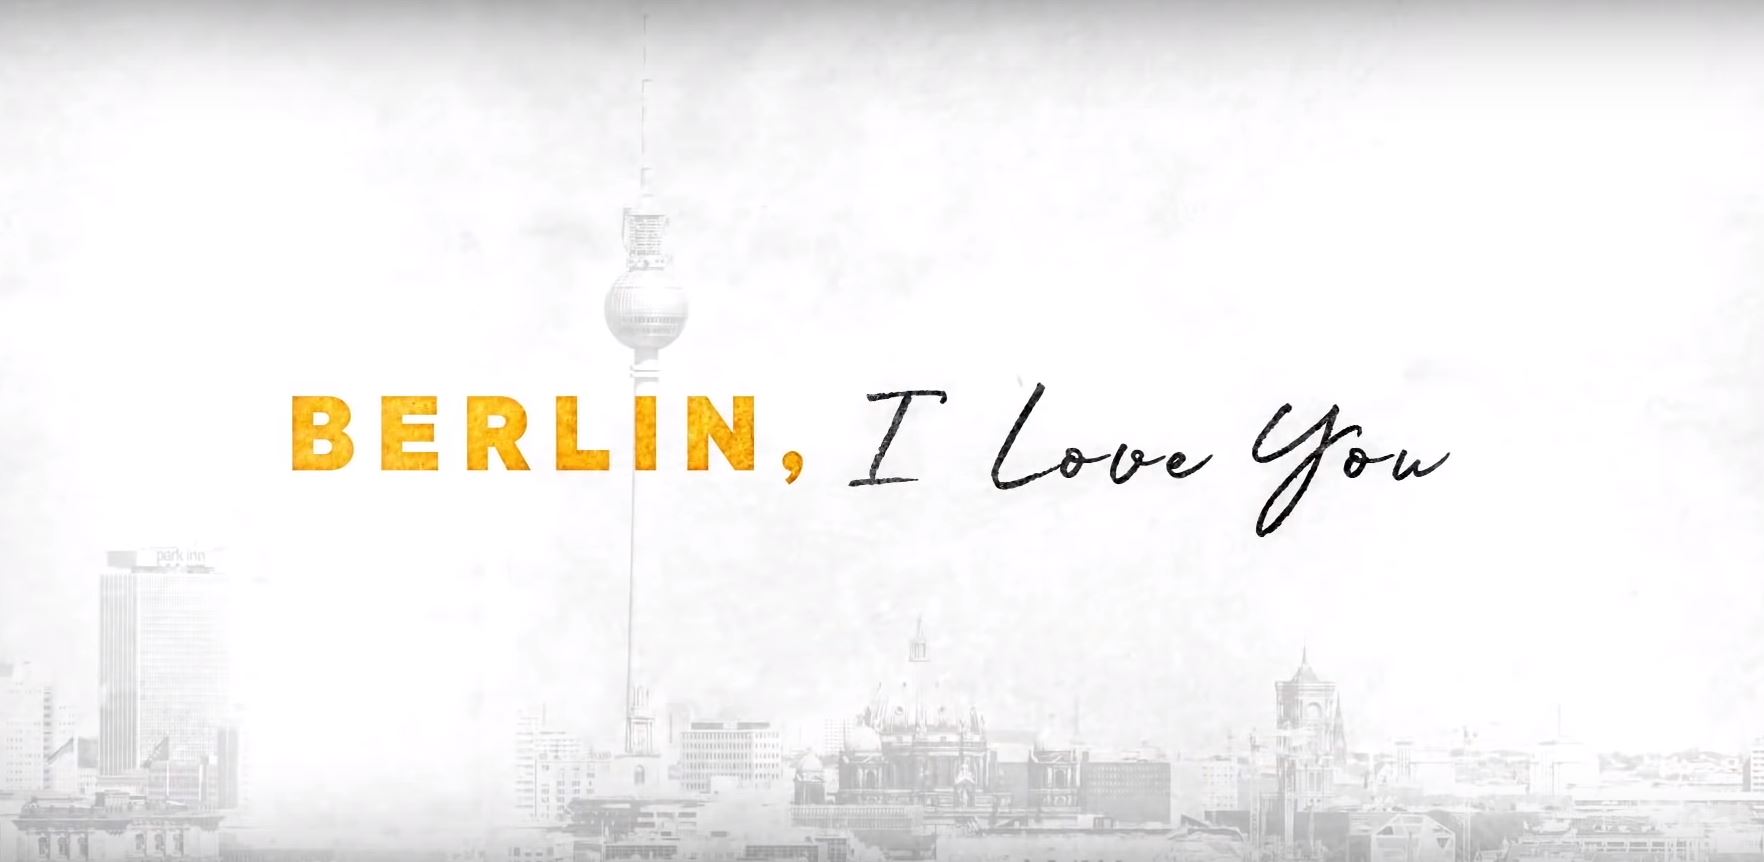 Берлин я люблю тебя. Кира Найтли Берлин я люблю тебя. Я люблю Берлин. Постер Берлин, я люблю тебя / Berlin, i Love you (2019). Надпись Berlin красиво.